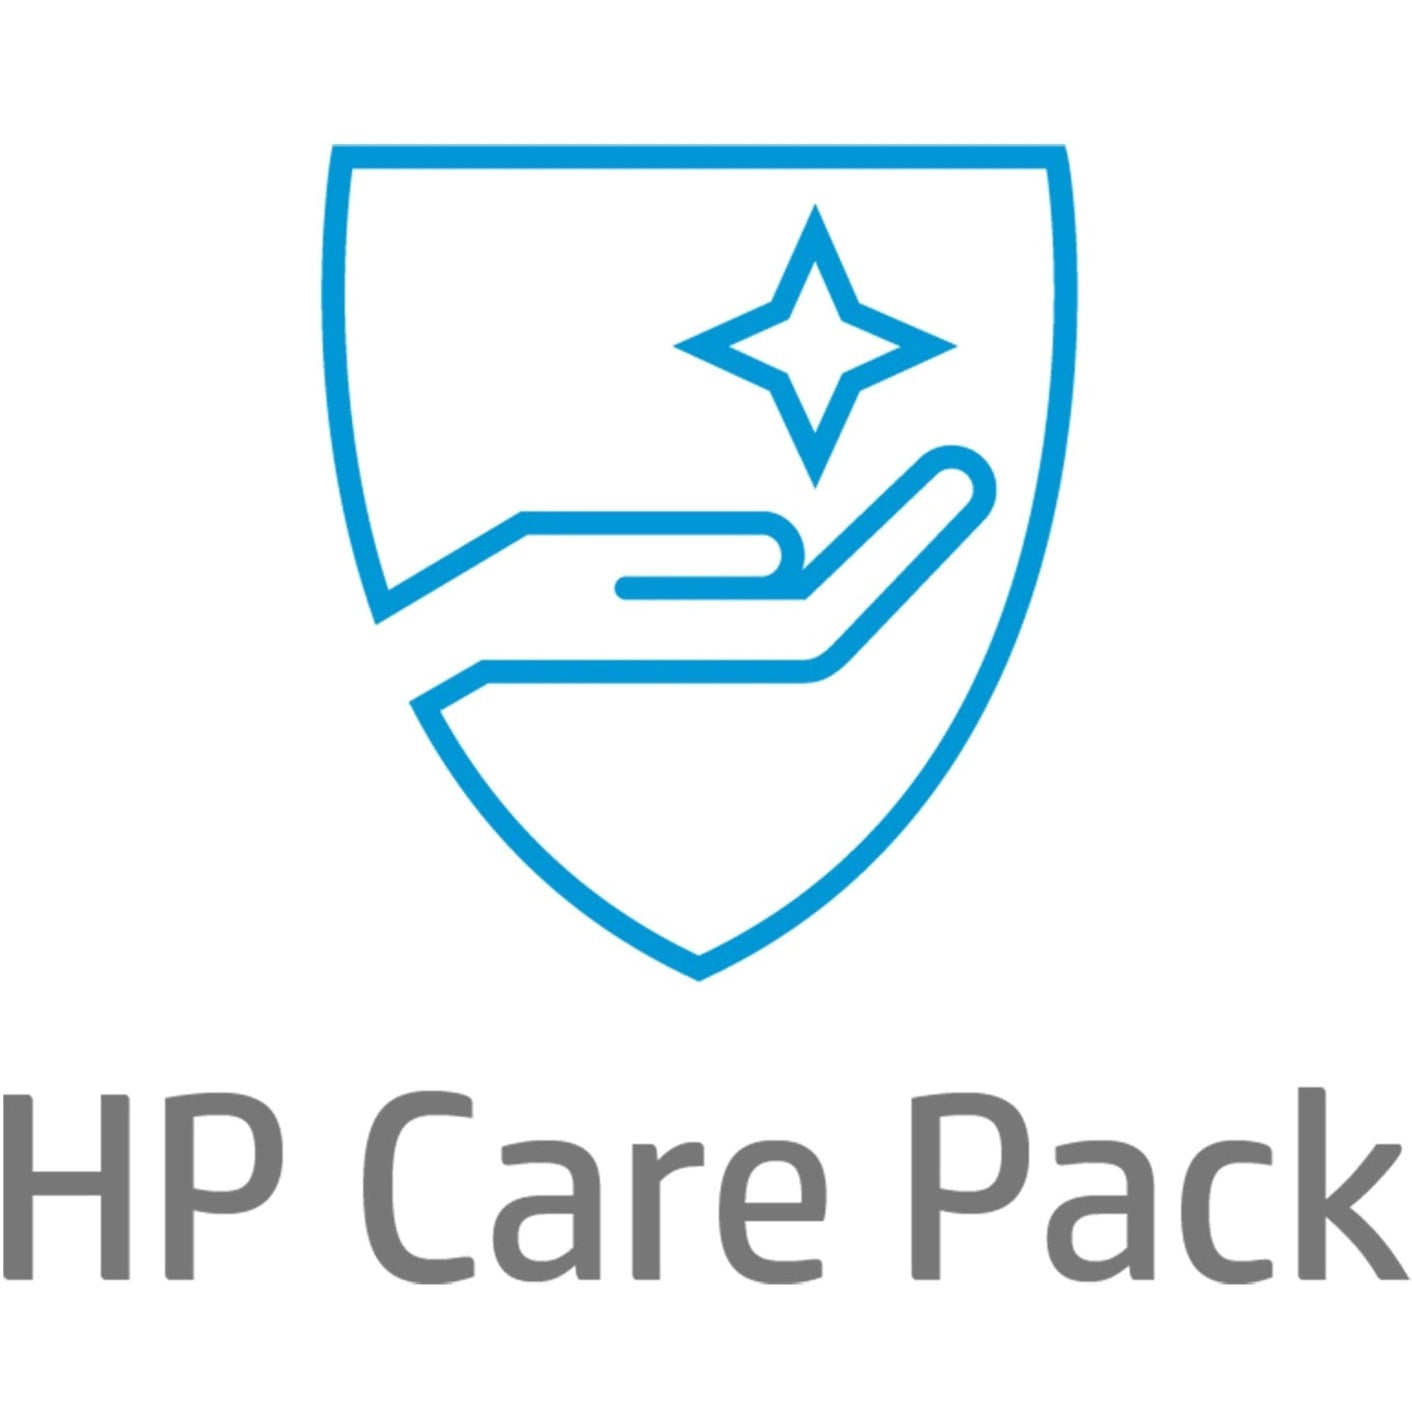 HP Care Pack - 3 Year - Service (UJ407E)